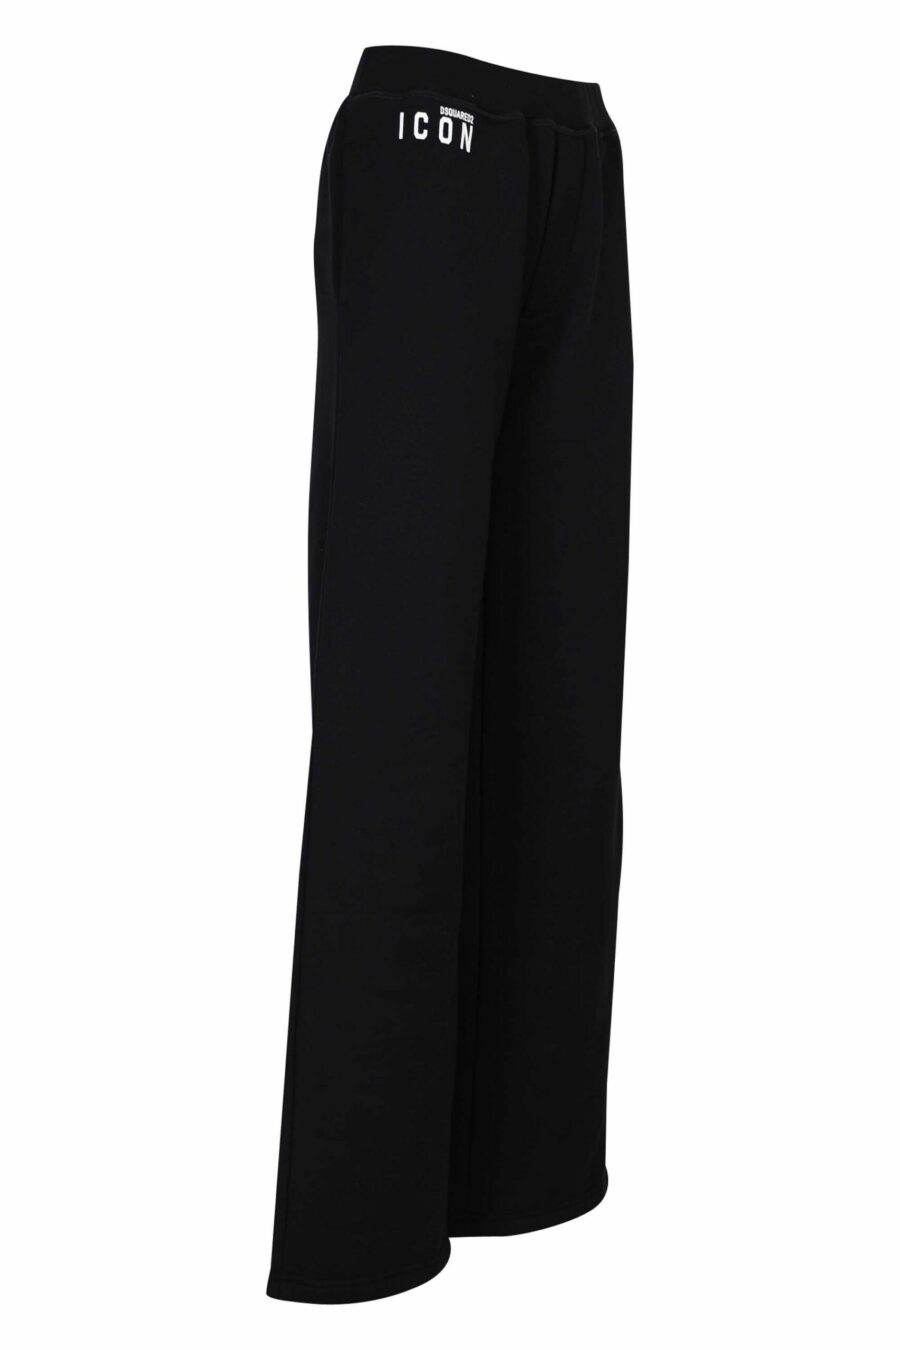 Pantalón de chándal negro con minilogo "icon" y bota ancha - 8054148401726 1 scaled